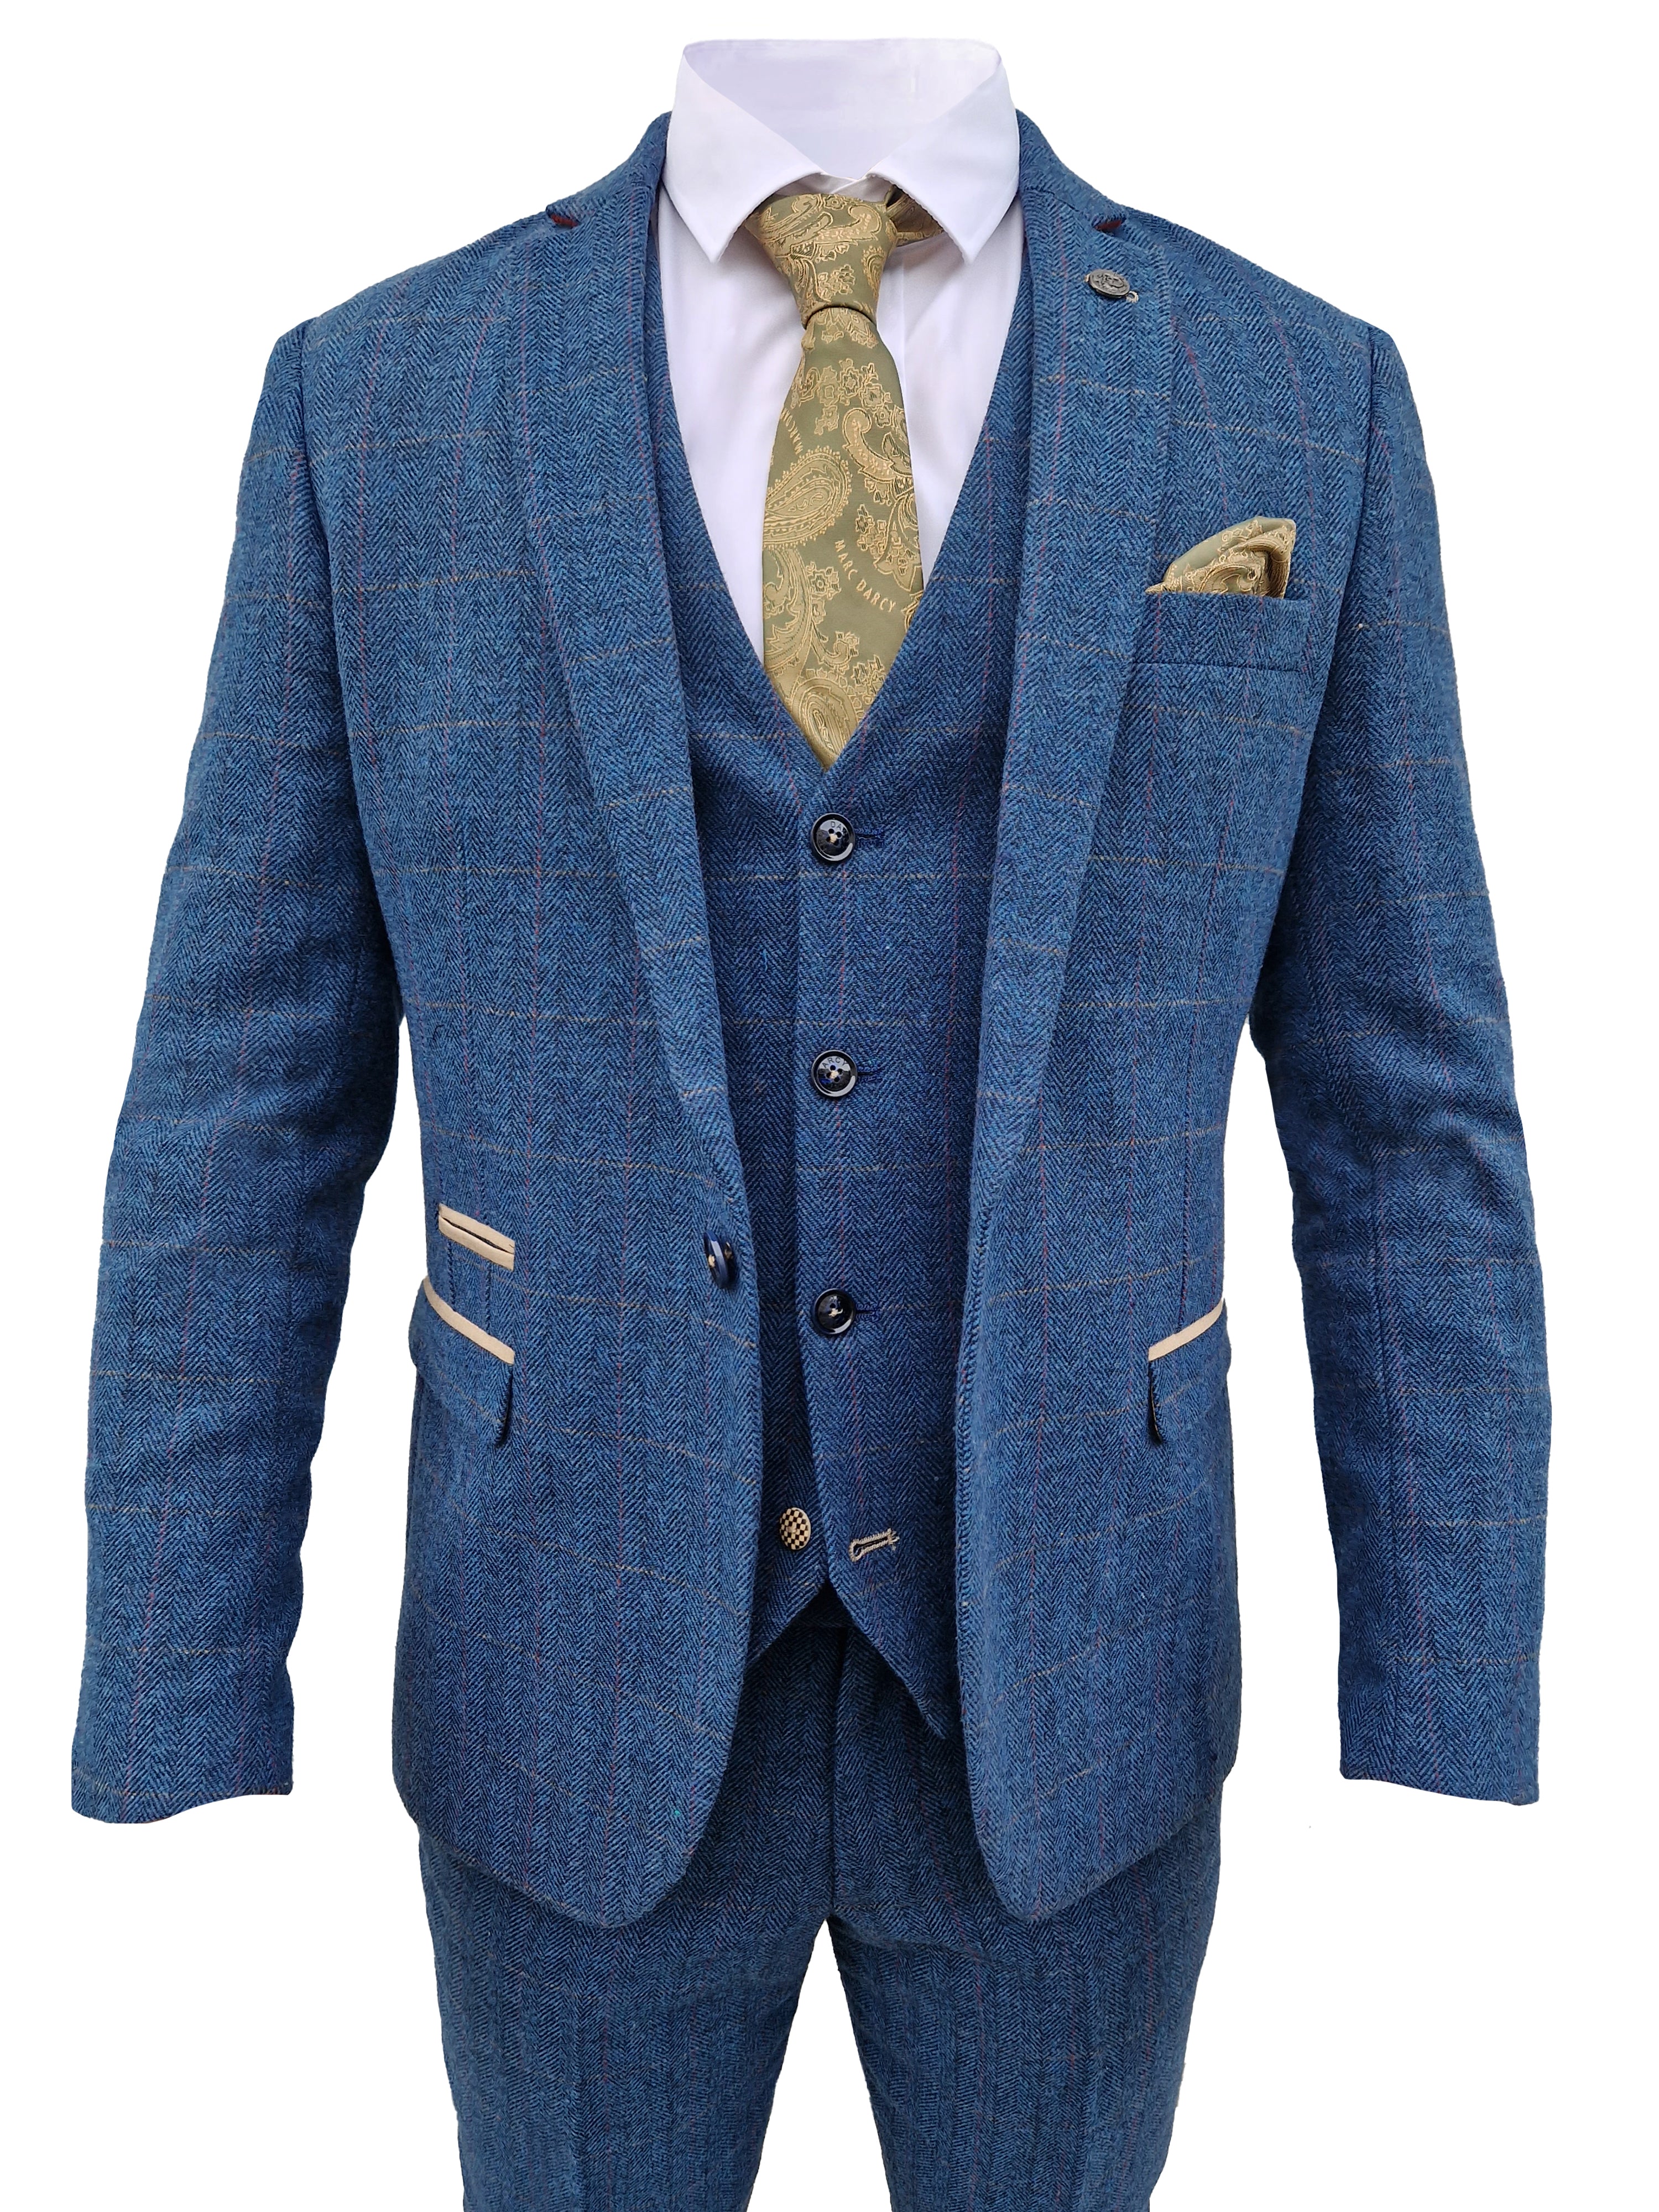 Dreiteiliger Anzug Dion blau Fischgrätmuster - driedelig pak